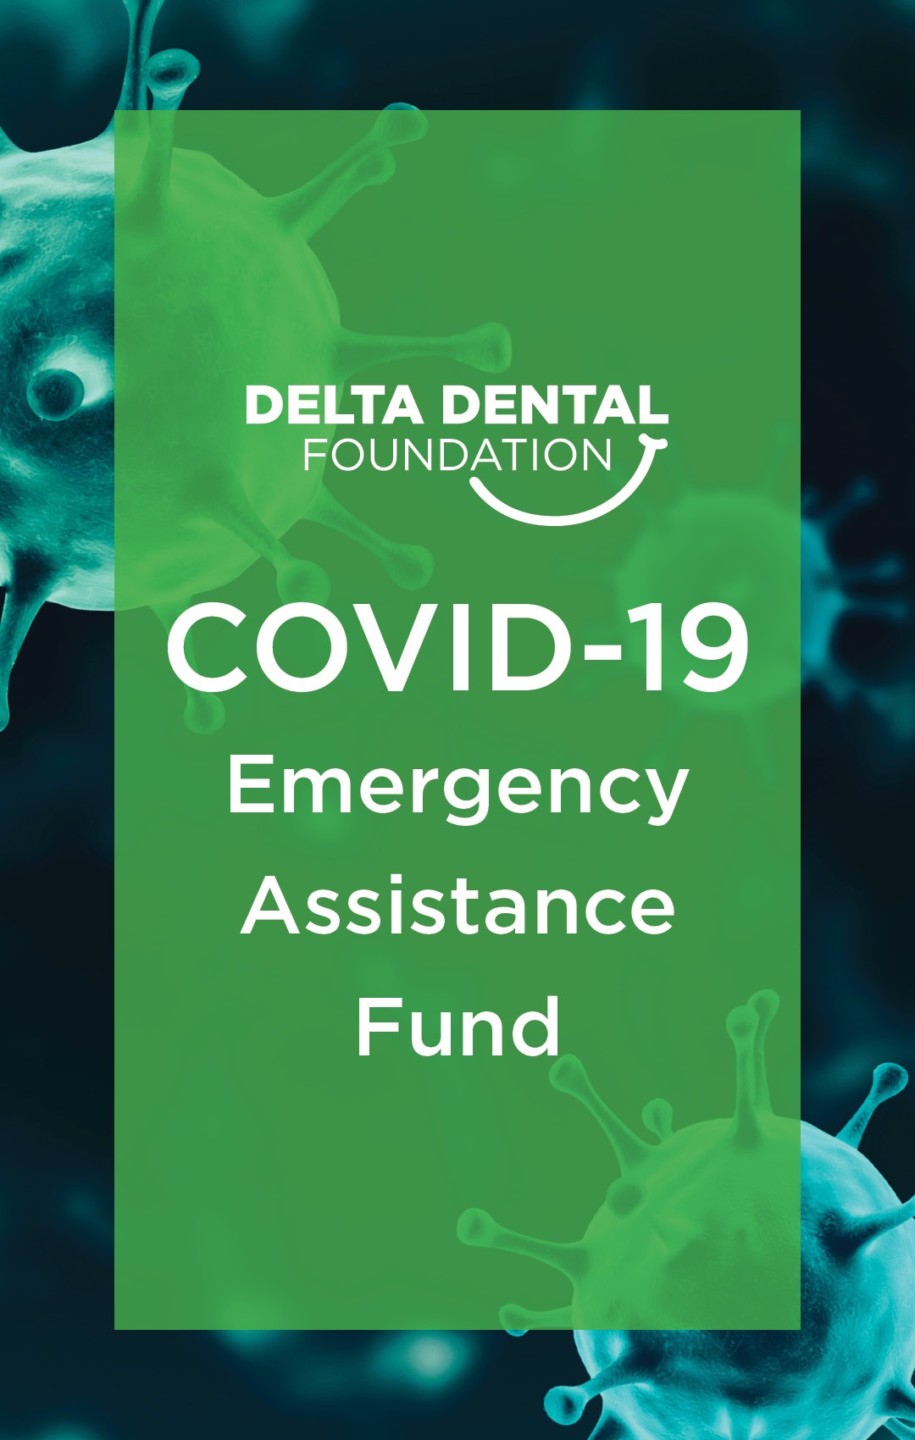 Delta Dental Foundation COVID Emergency Fund